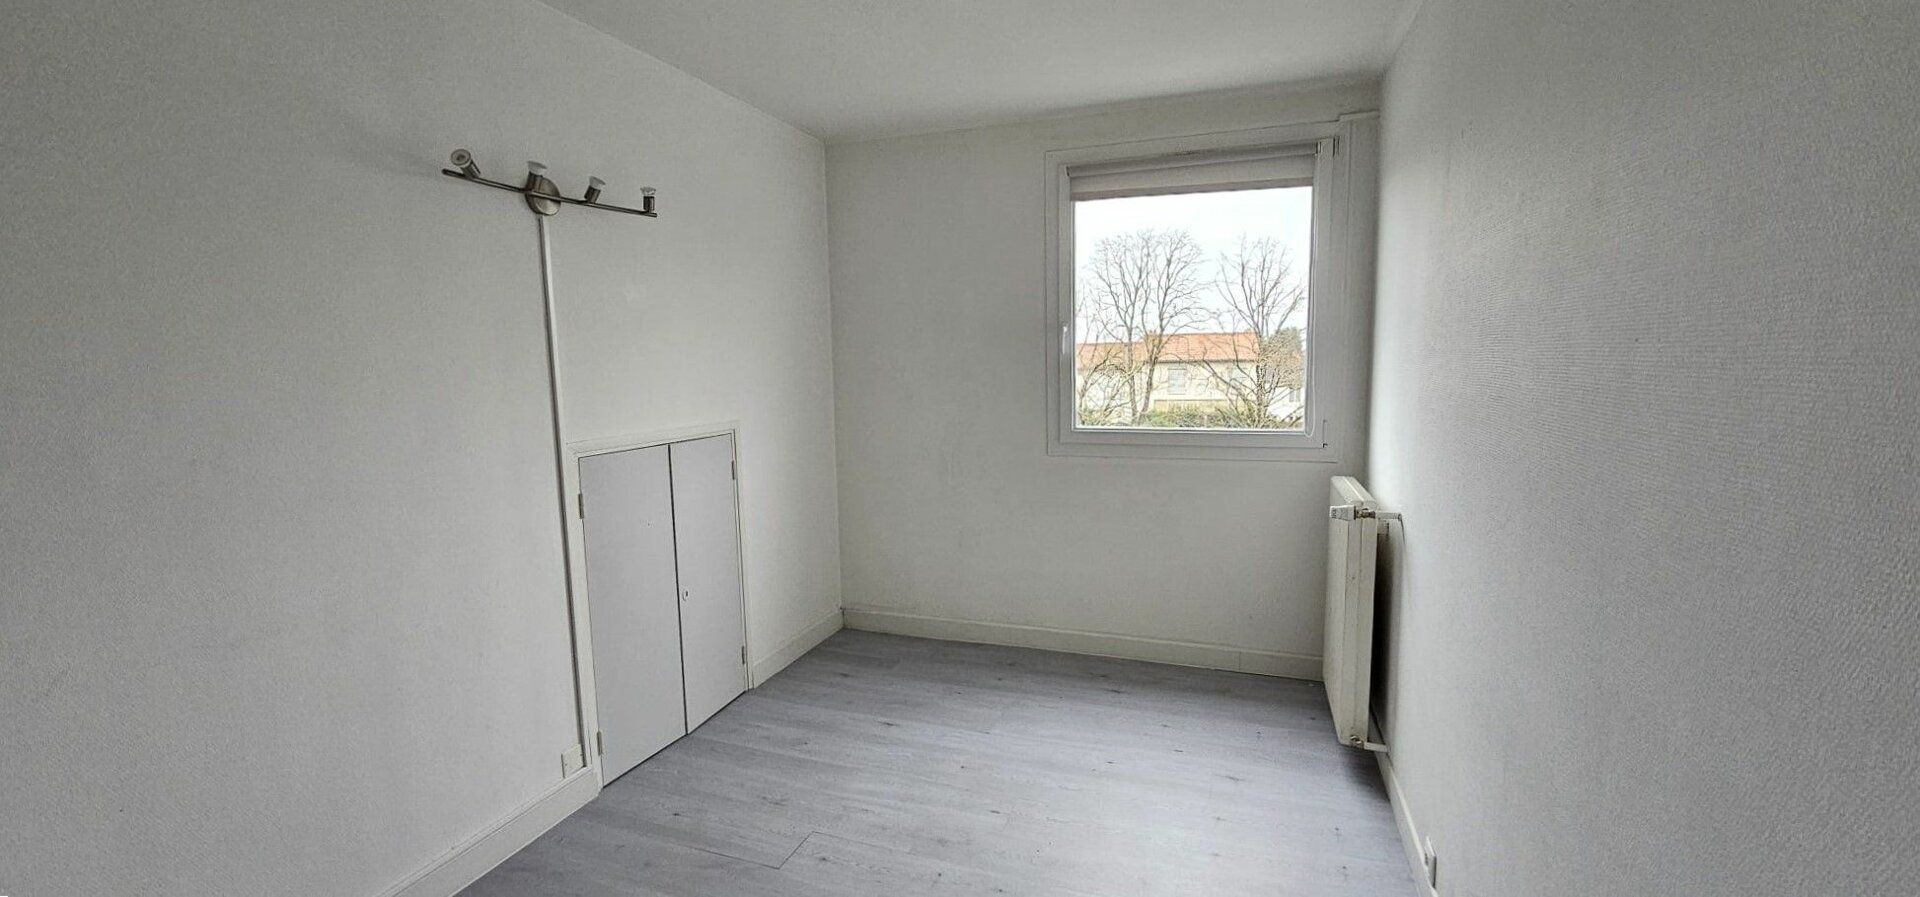 Appartement à vendre 3 68.34m2 à Poitiers vignette-7